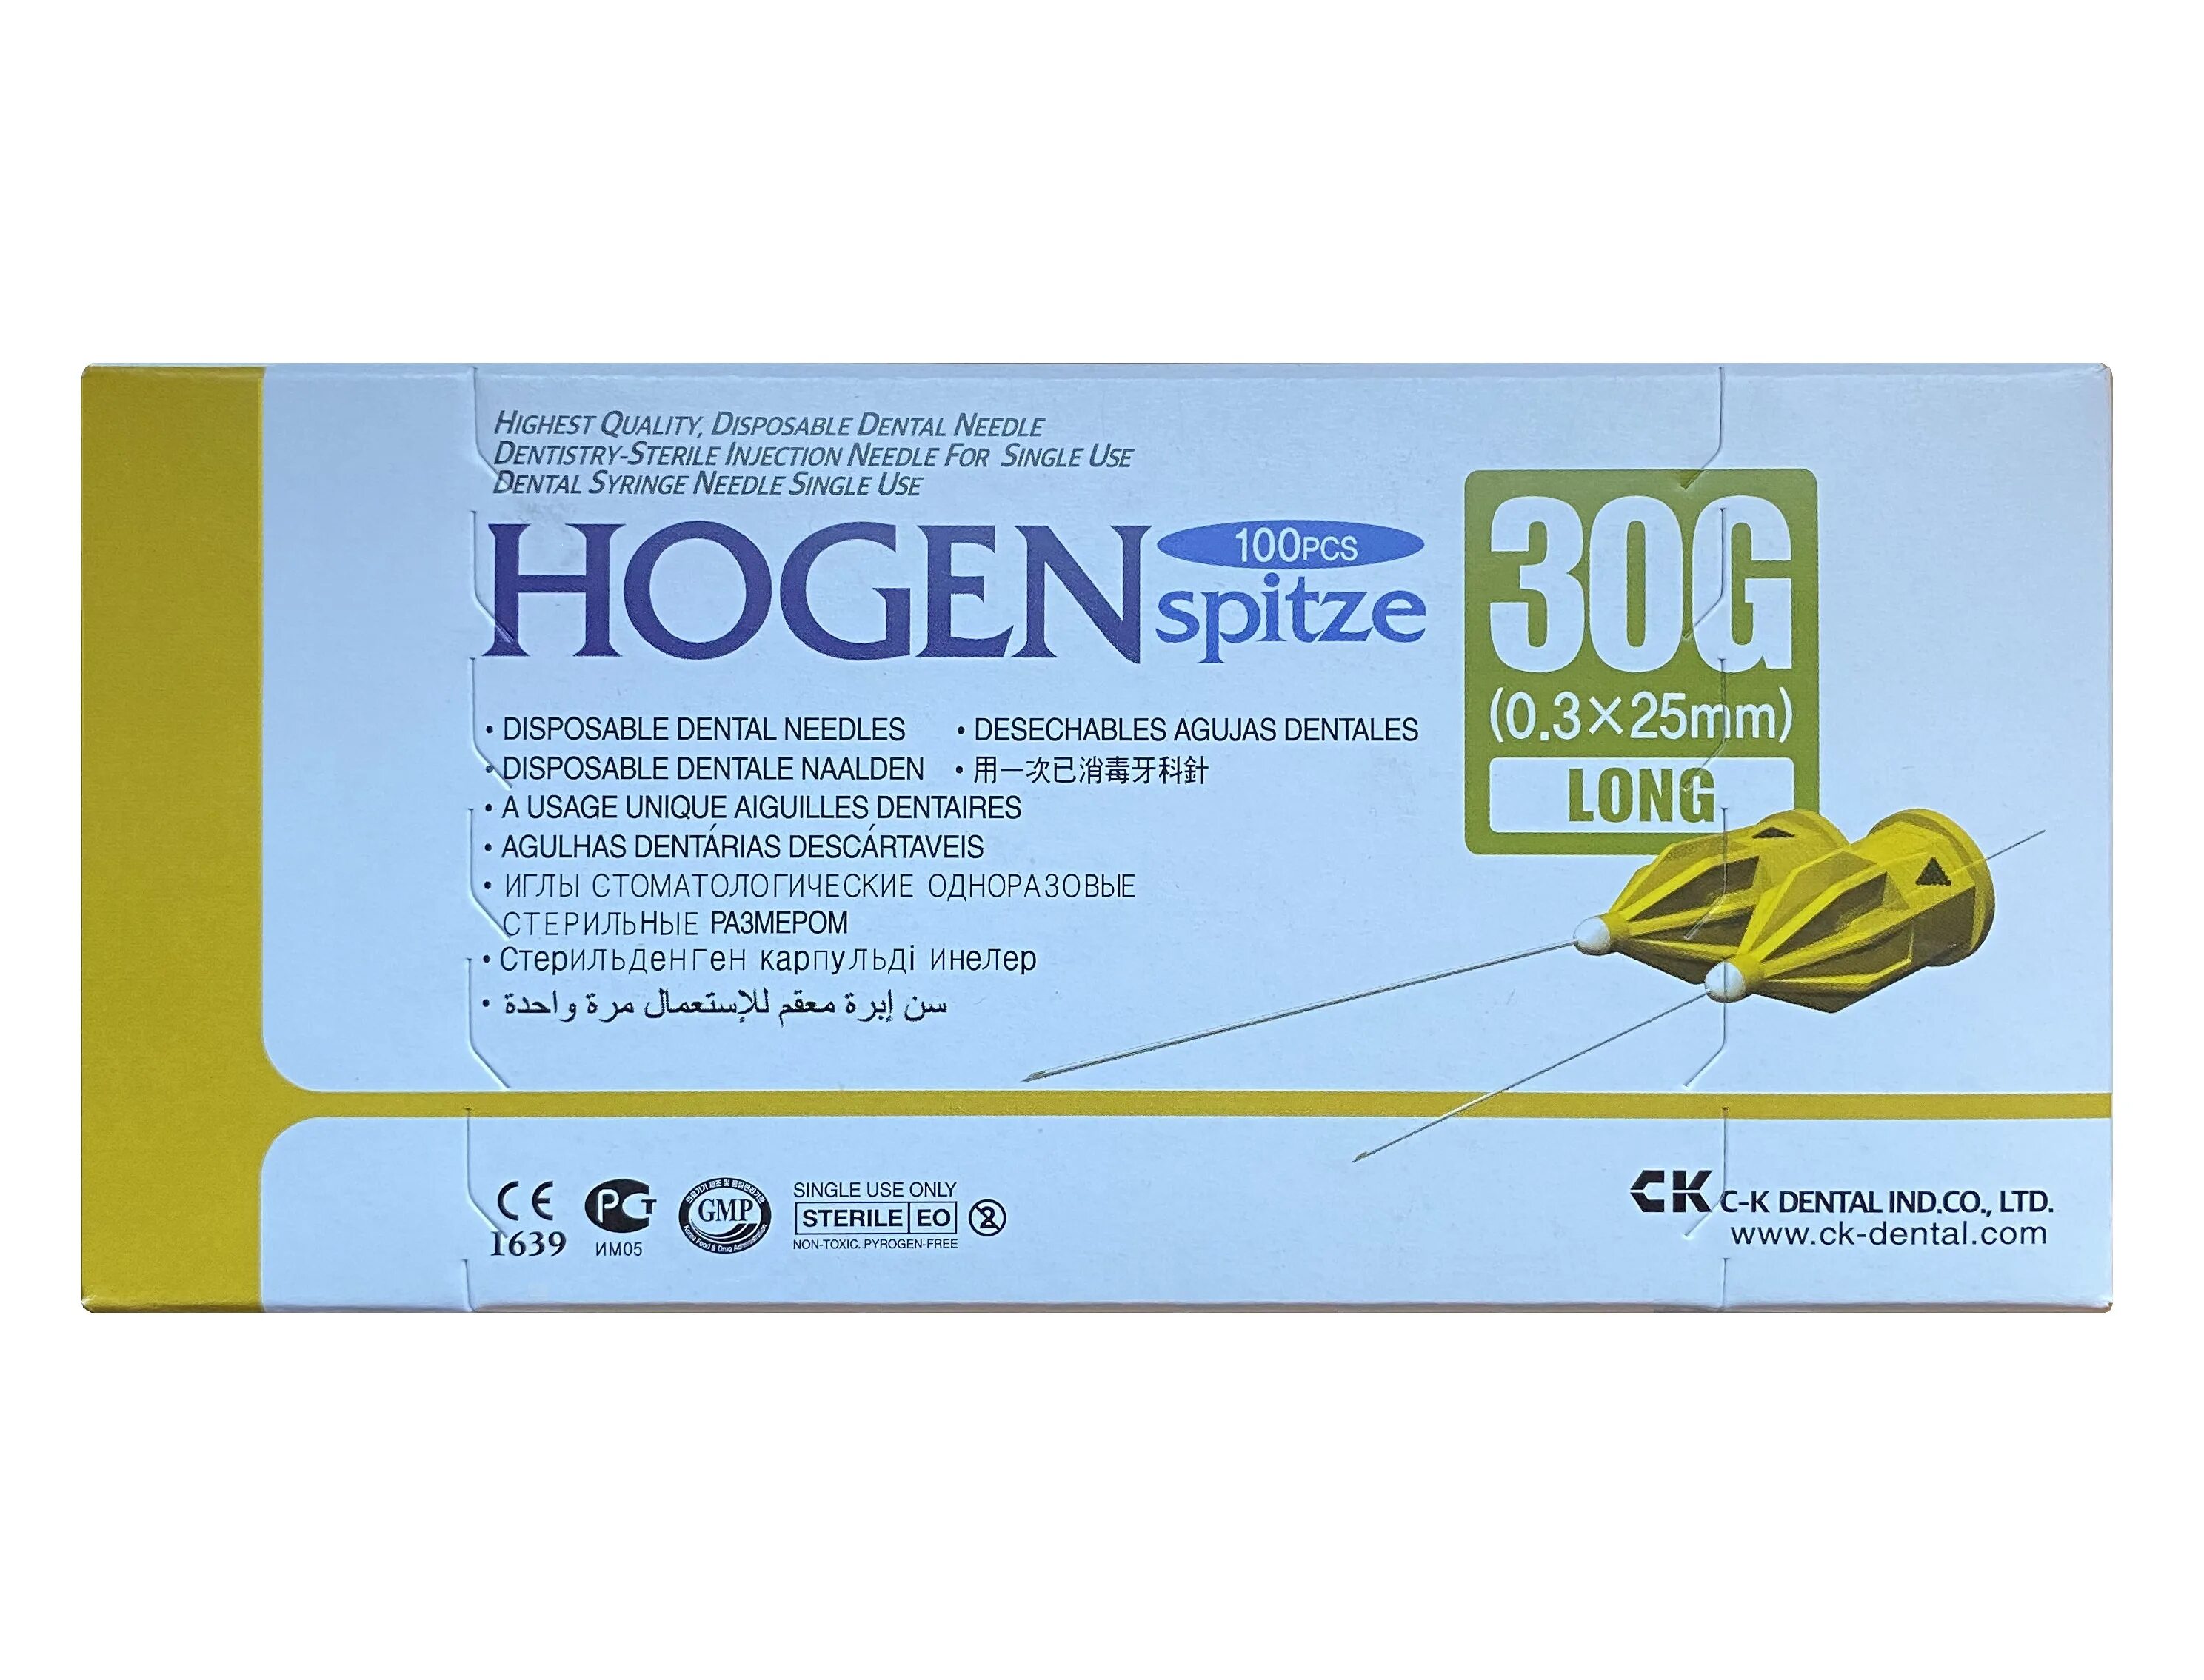 Иглы стоматологические карпульные. Hogen Spitze иглы стоматологические. Иглы Хоген 25мм. Иглы Hogen Spitze c-k Dental 0.3 х 25 мм 100 шт./уп. Иглы карпульные Hogen Spitze 0,3х12мм (100шт).